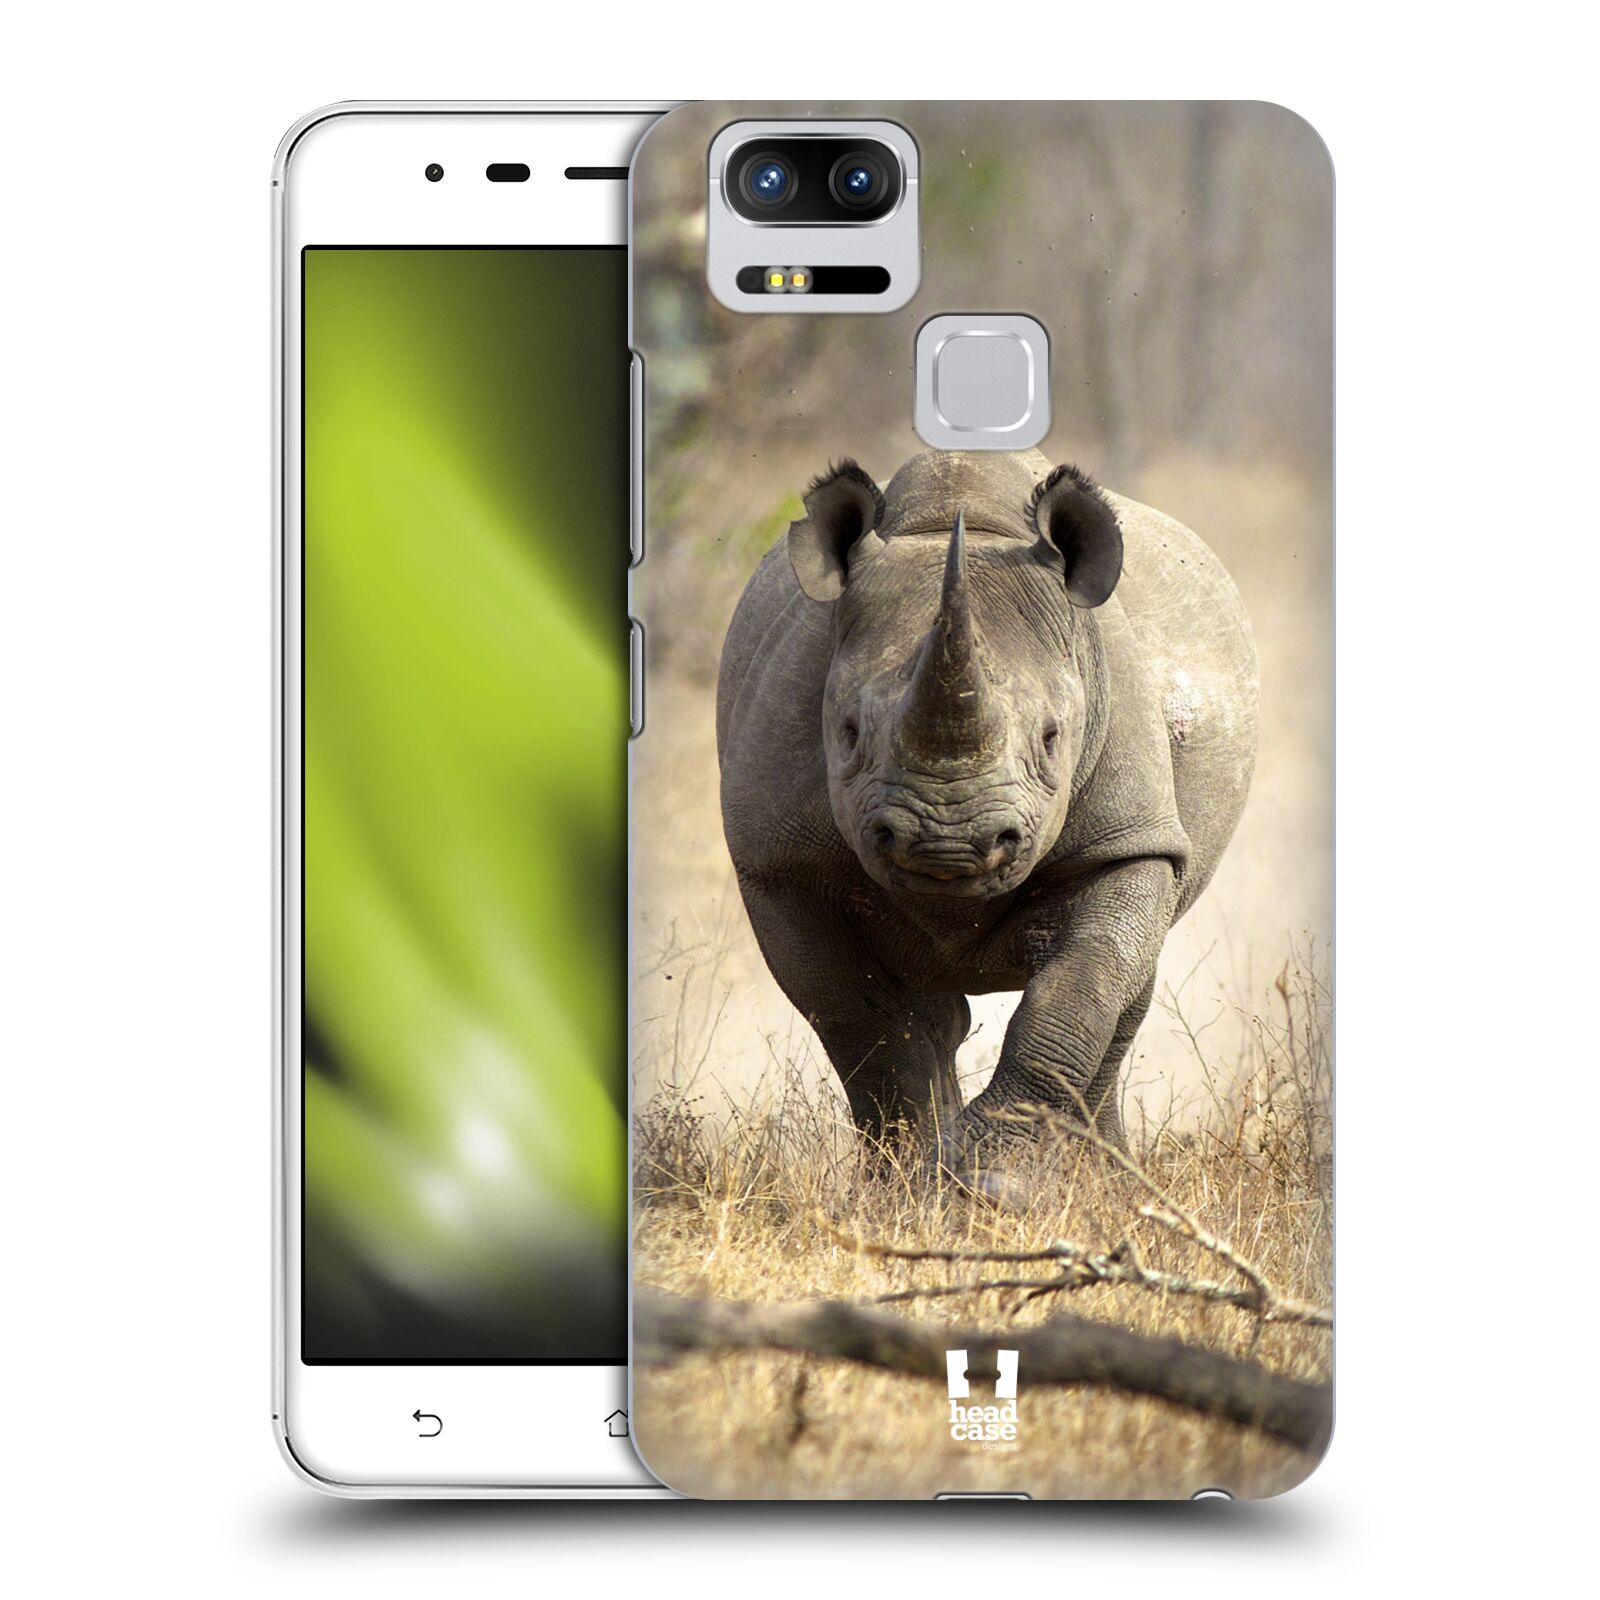 HEAD CASE plastový obal na mobil Asus Zenfone 3 Zoom ZE553KL vzor Divočina, Divoký život a zvířata foto AFRIKA BĚŽÍCÍ NOSOROŽEC